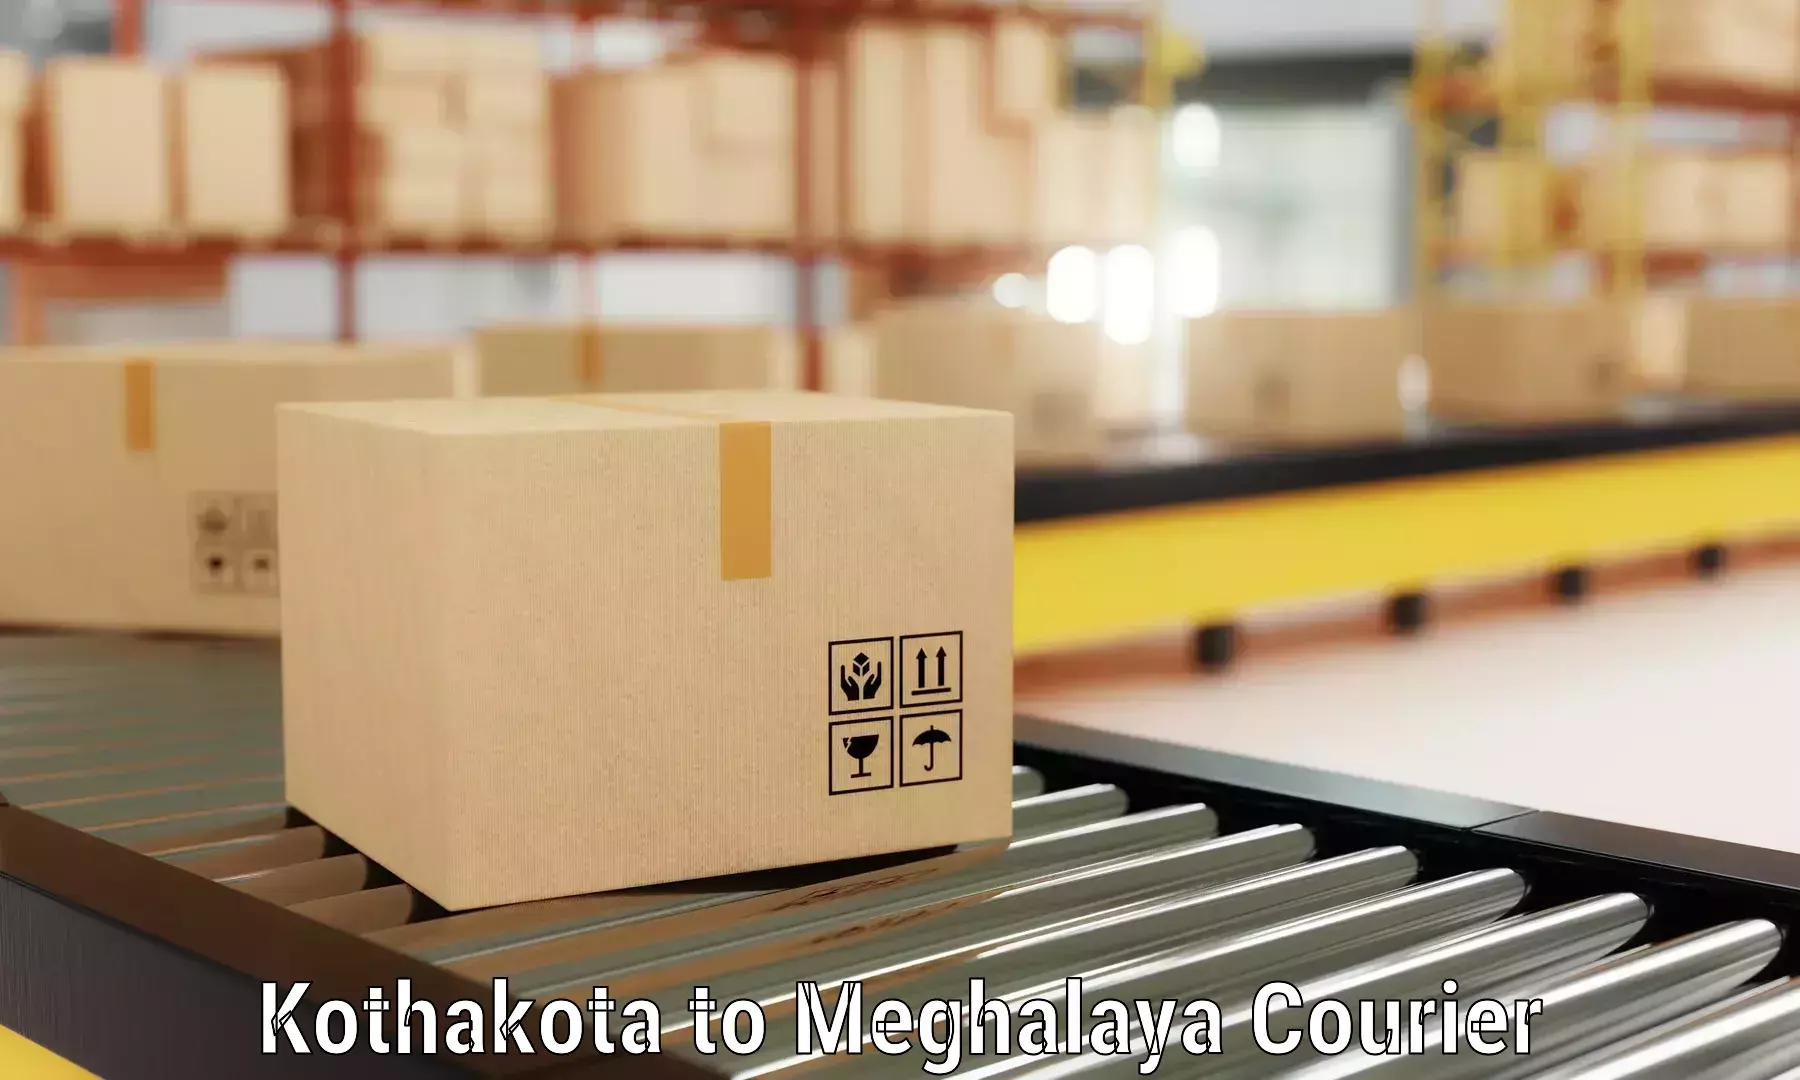 Furniture transport professionals Kothakota to Meghalaya